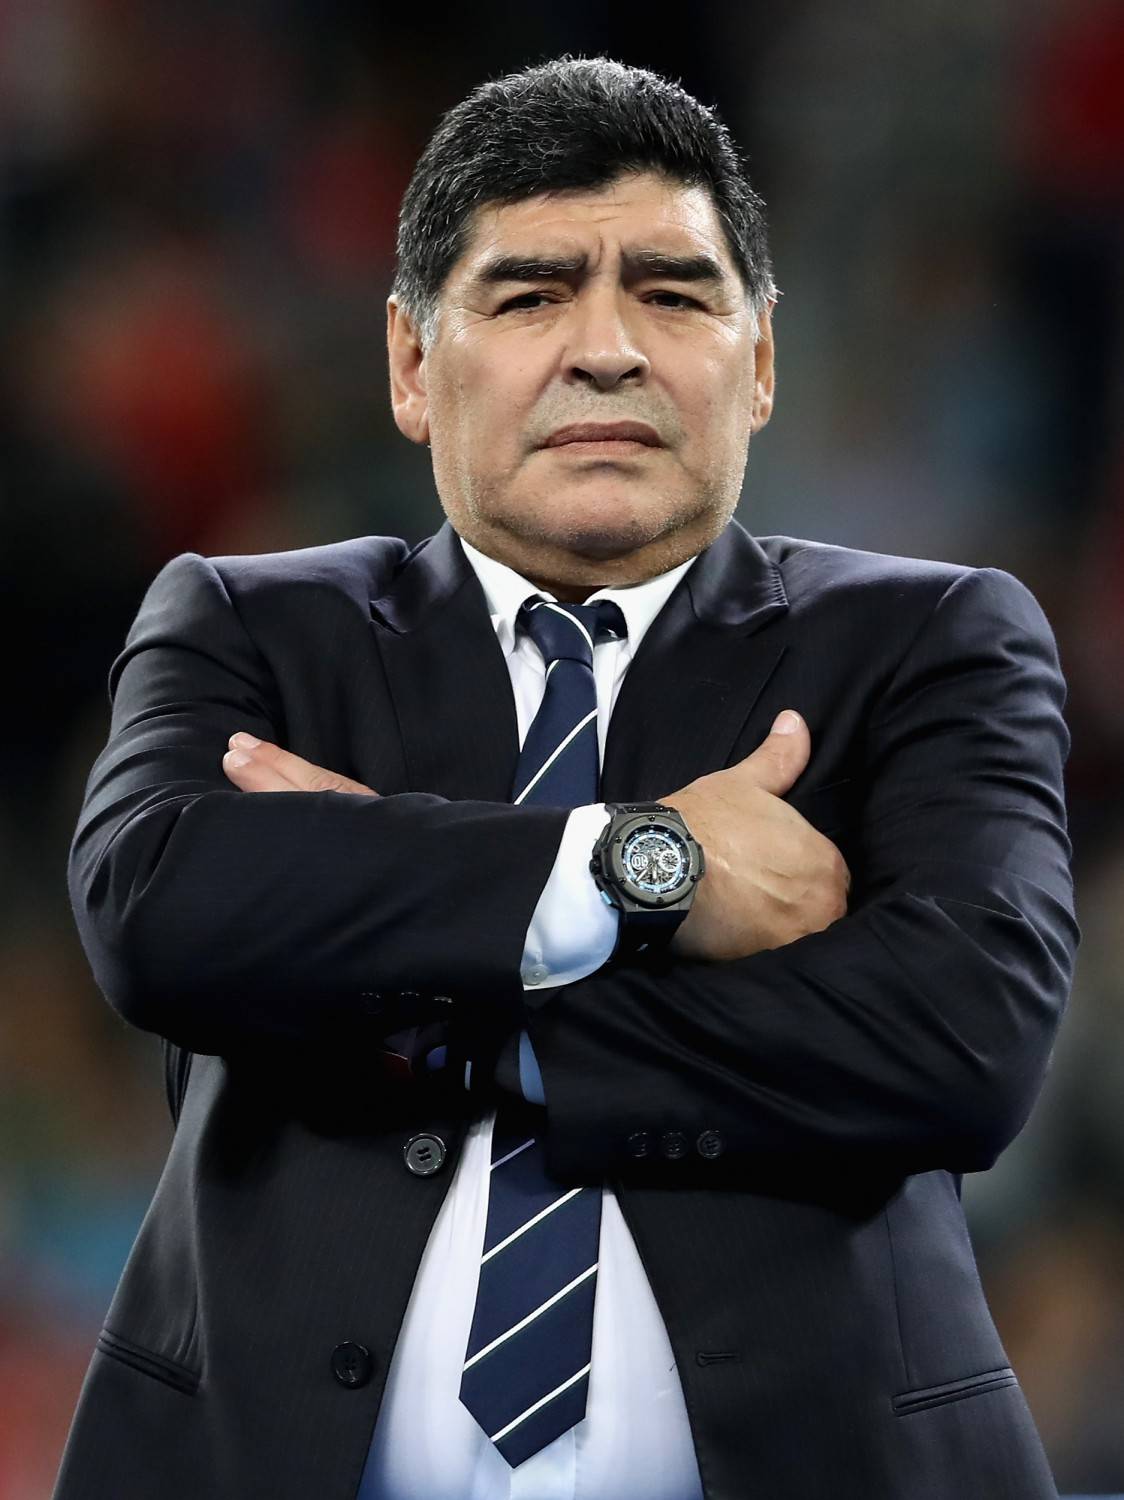 Maradona: "La cittadinanza? Già presa con la maglia numero 10"